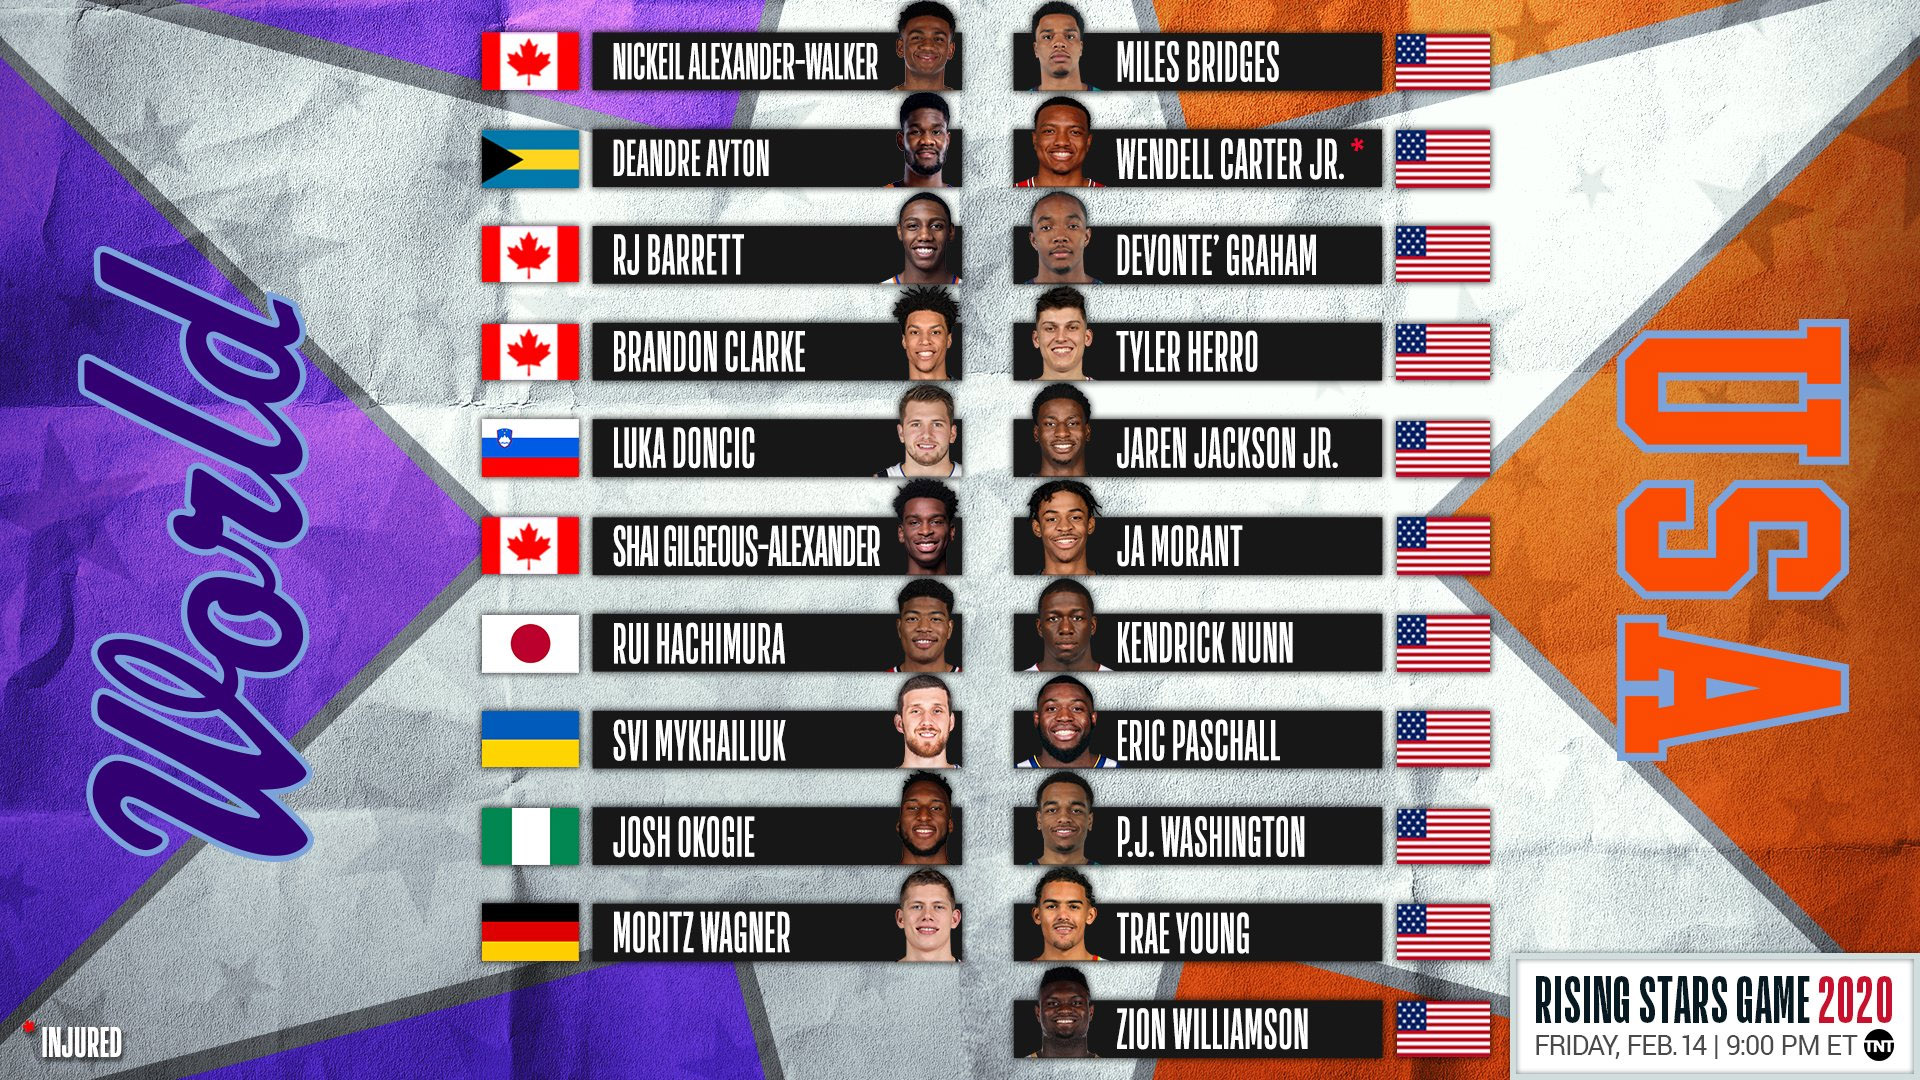 Les rosters du Rising Stars Challenge 2020 le Canada, les Grizzlies